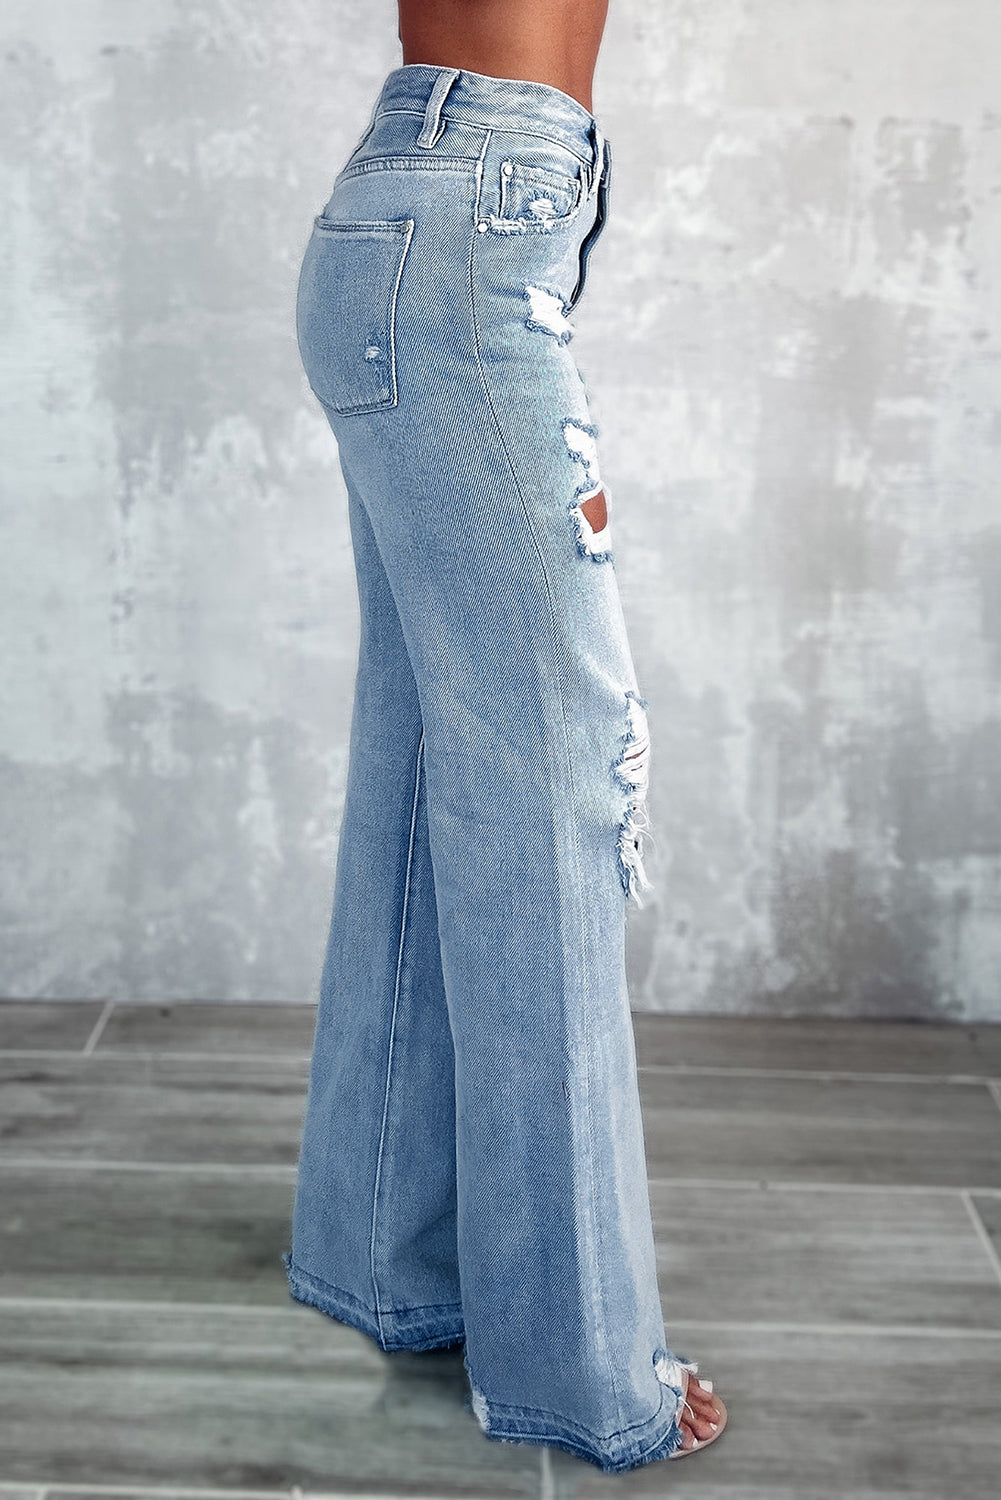 Jeans a gamba larga strappati effetto consumato vintage azzurro cielo